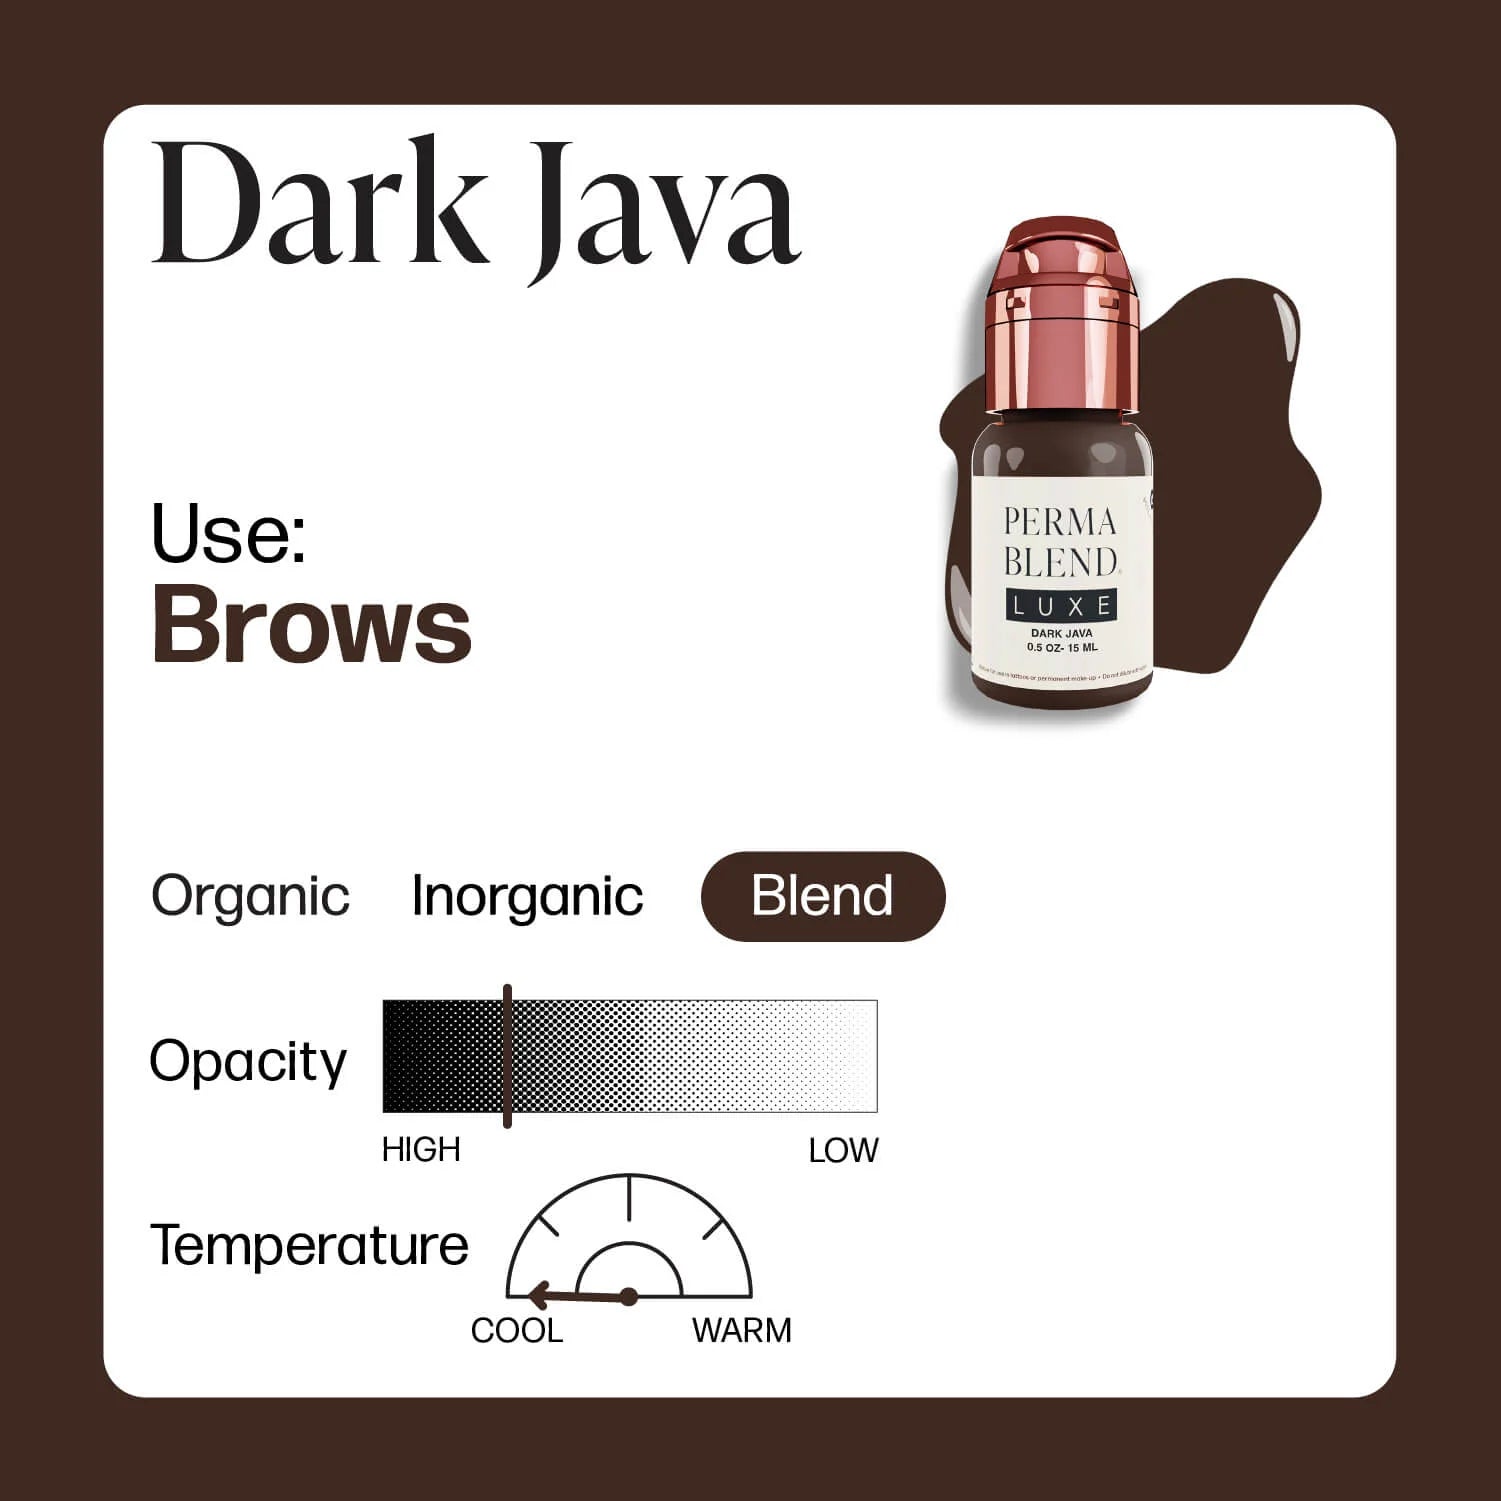 Perma Blend Luxe - Dark Java